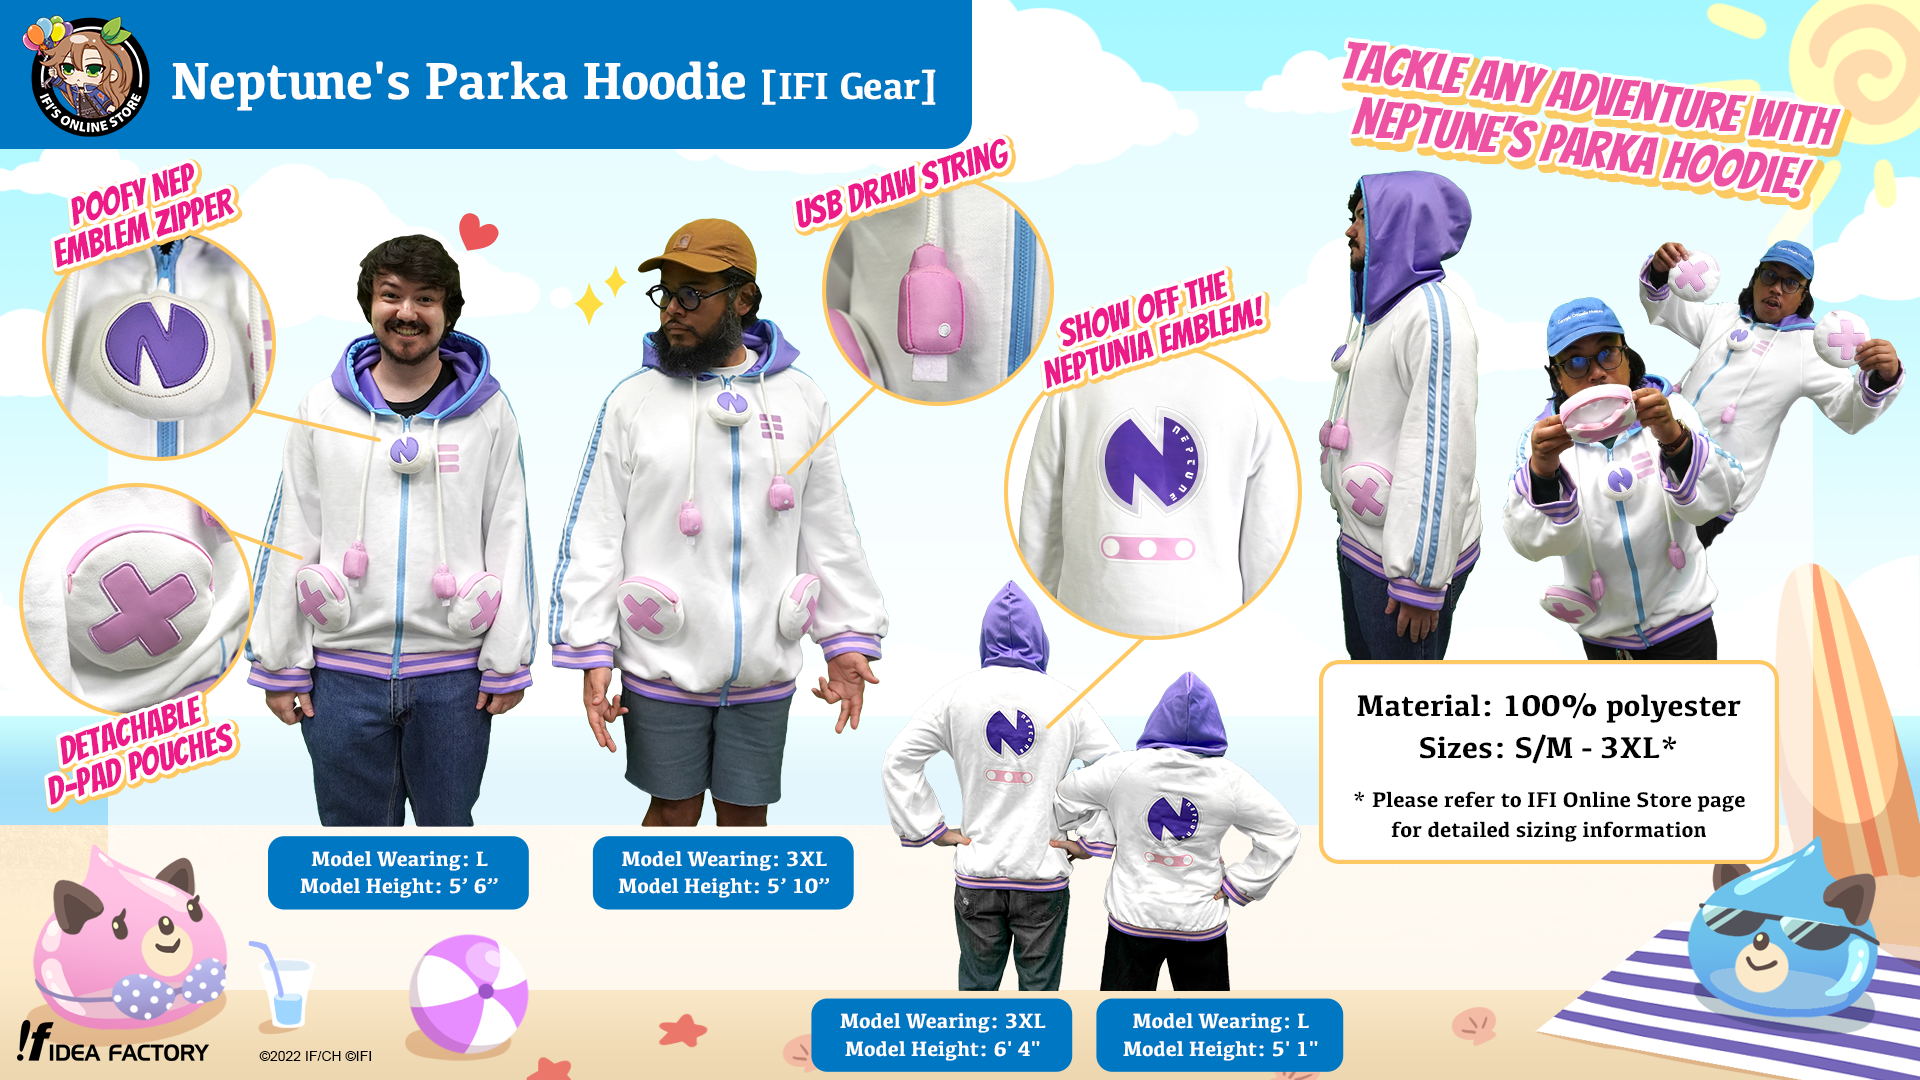 Neptune's Parka Hoodie [IFI Gear]